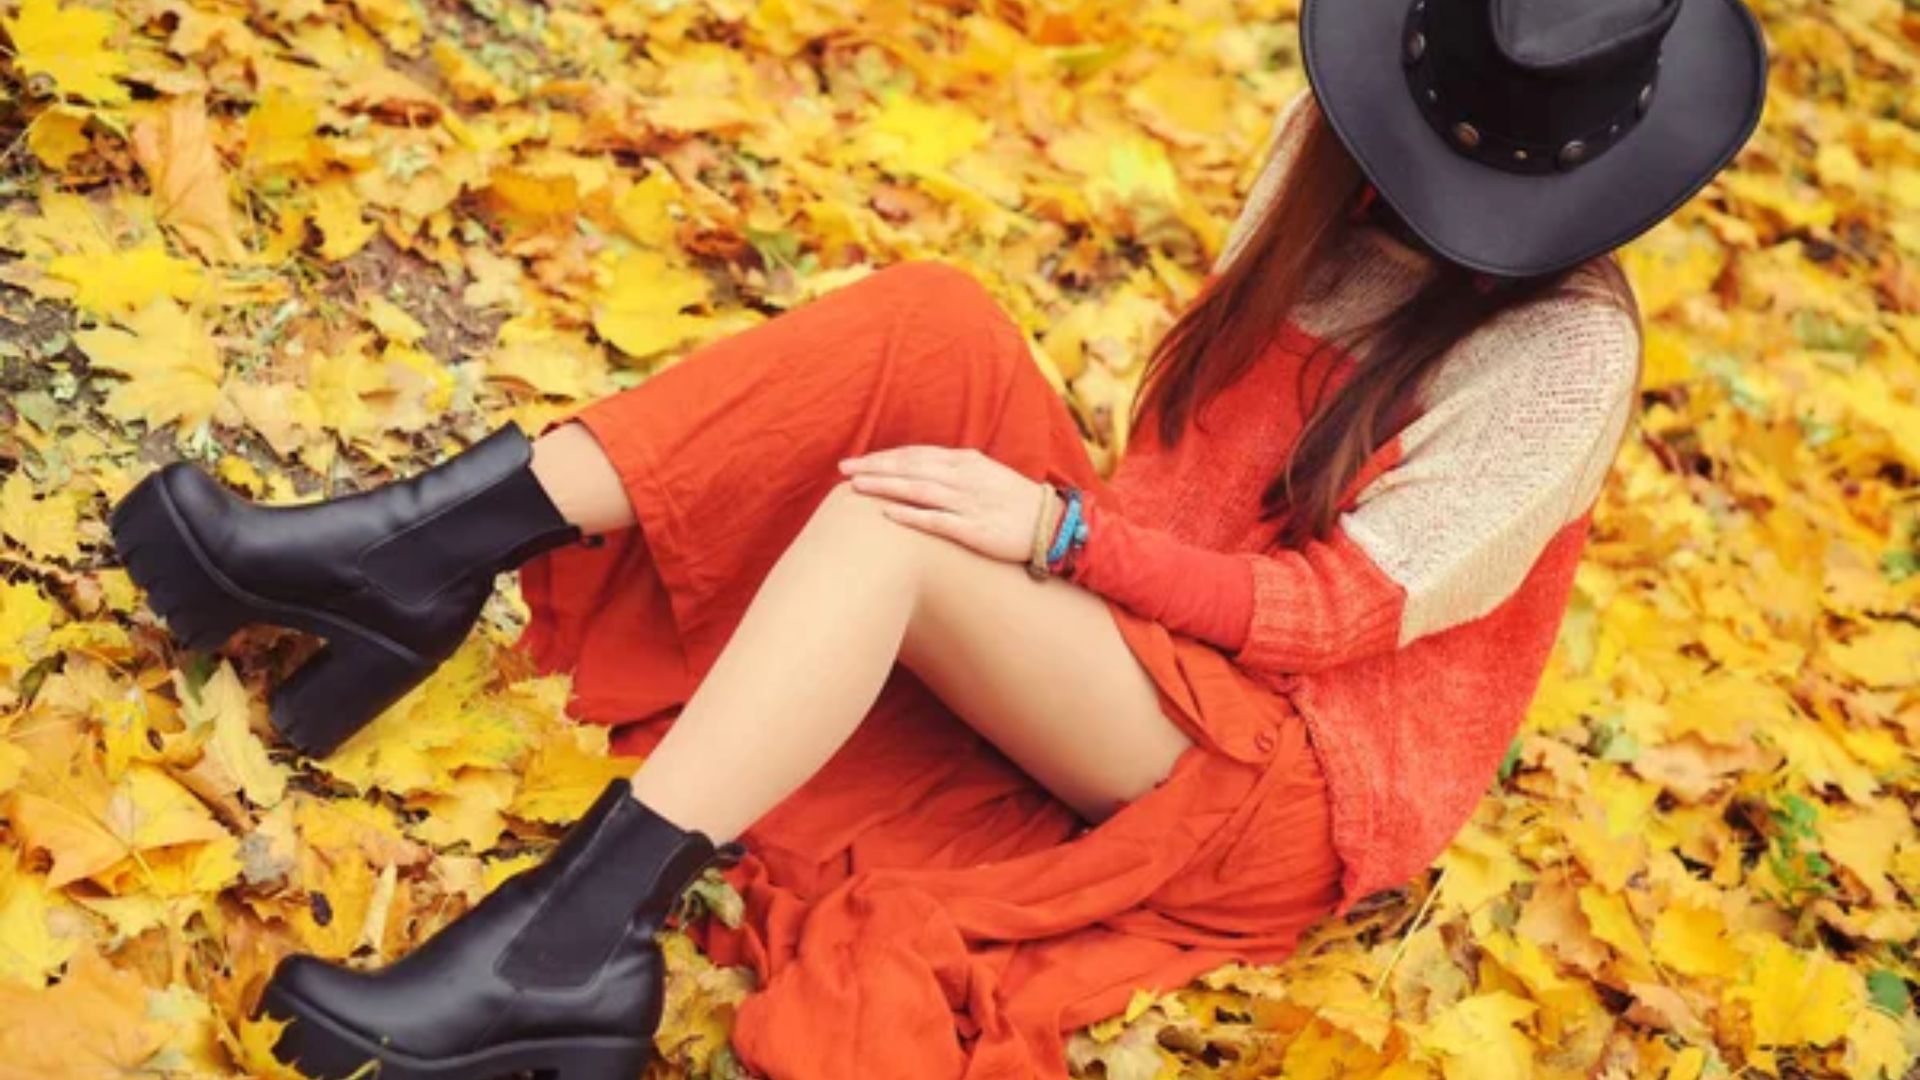 Mulher tirando fotos sobre folhas usando vestido laranja e uma bota preta tratorada